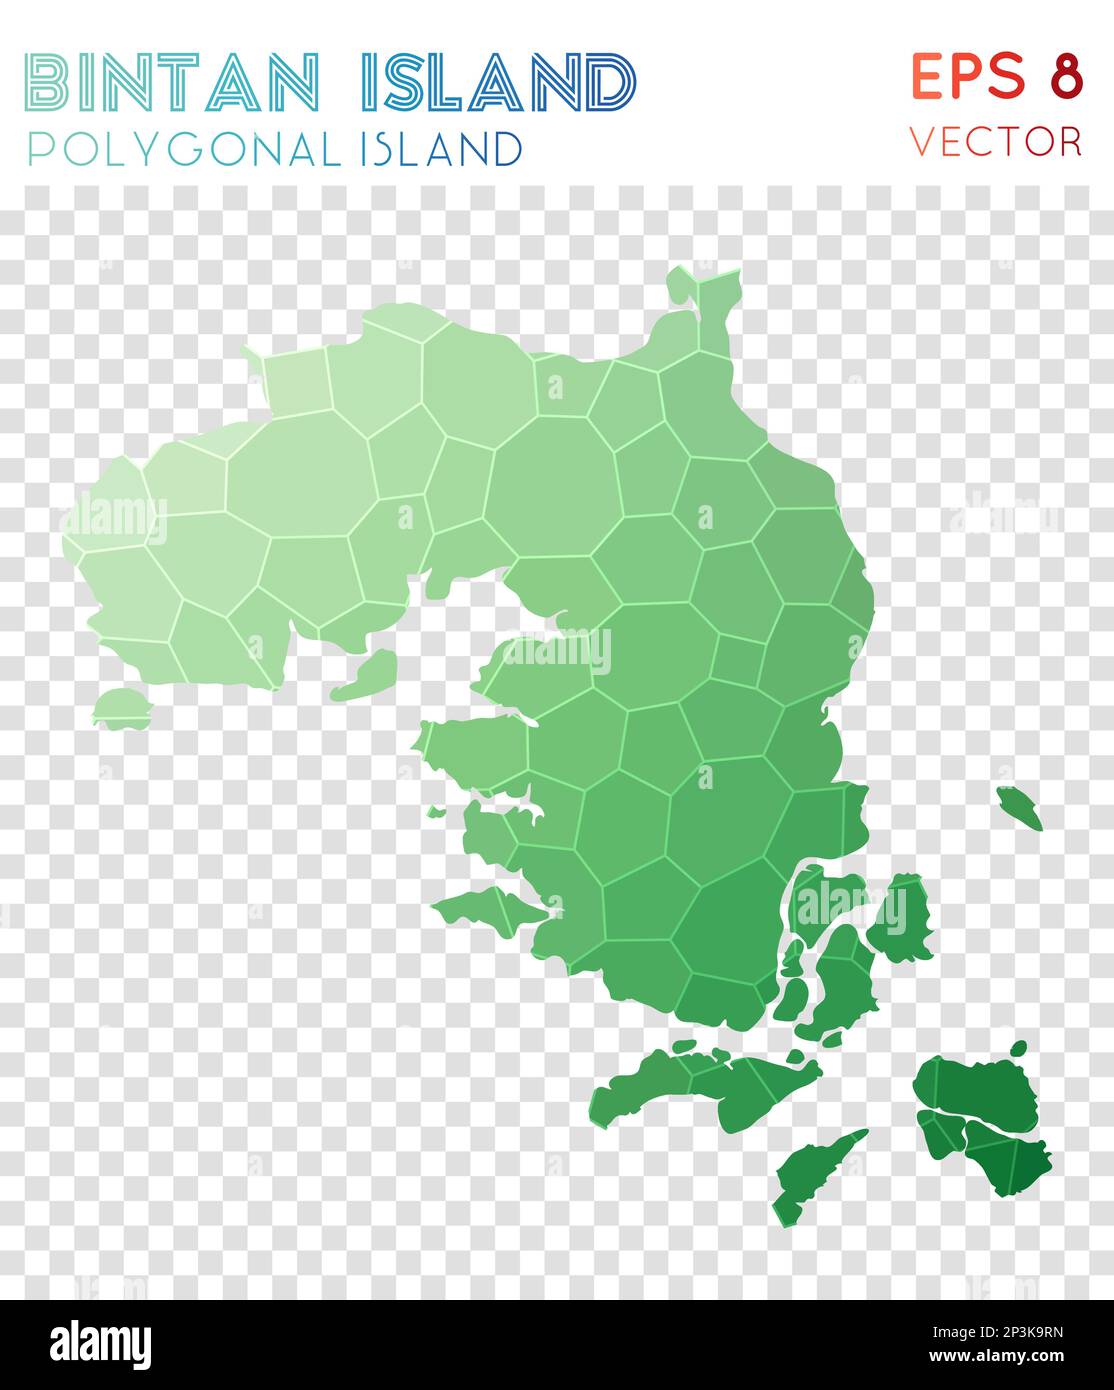 Vieleckige Karte der Insel Bintan, Insel im Mosaikstil. Unglaublicher Low-Poly-Stil, modernes Design. Polygonale Karte der Insel Bintan für Infografiken oder Präsentationen Stock Vektor